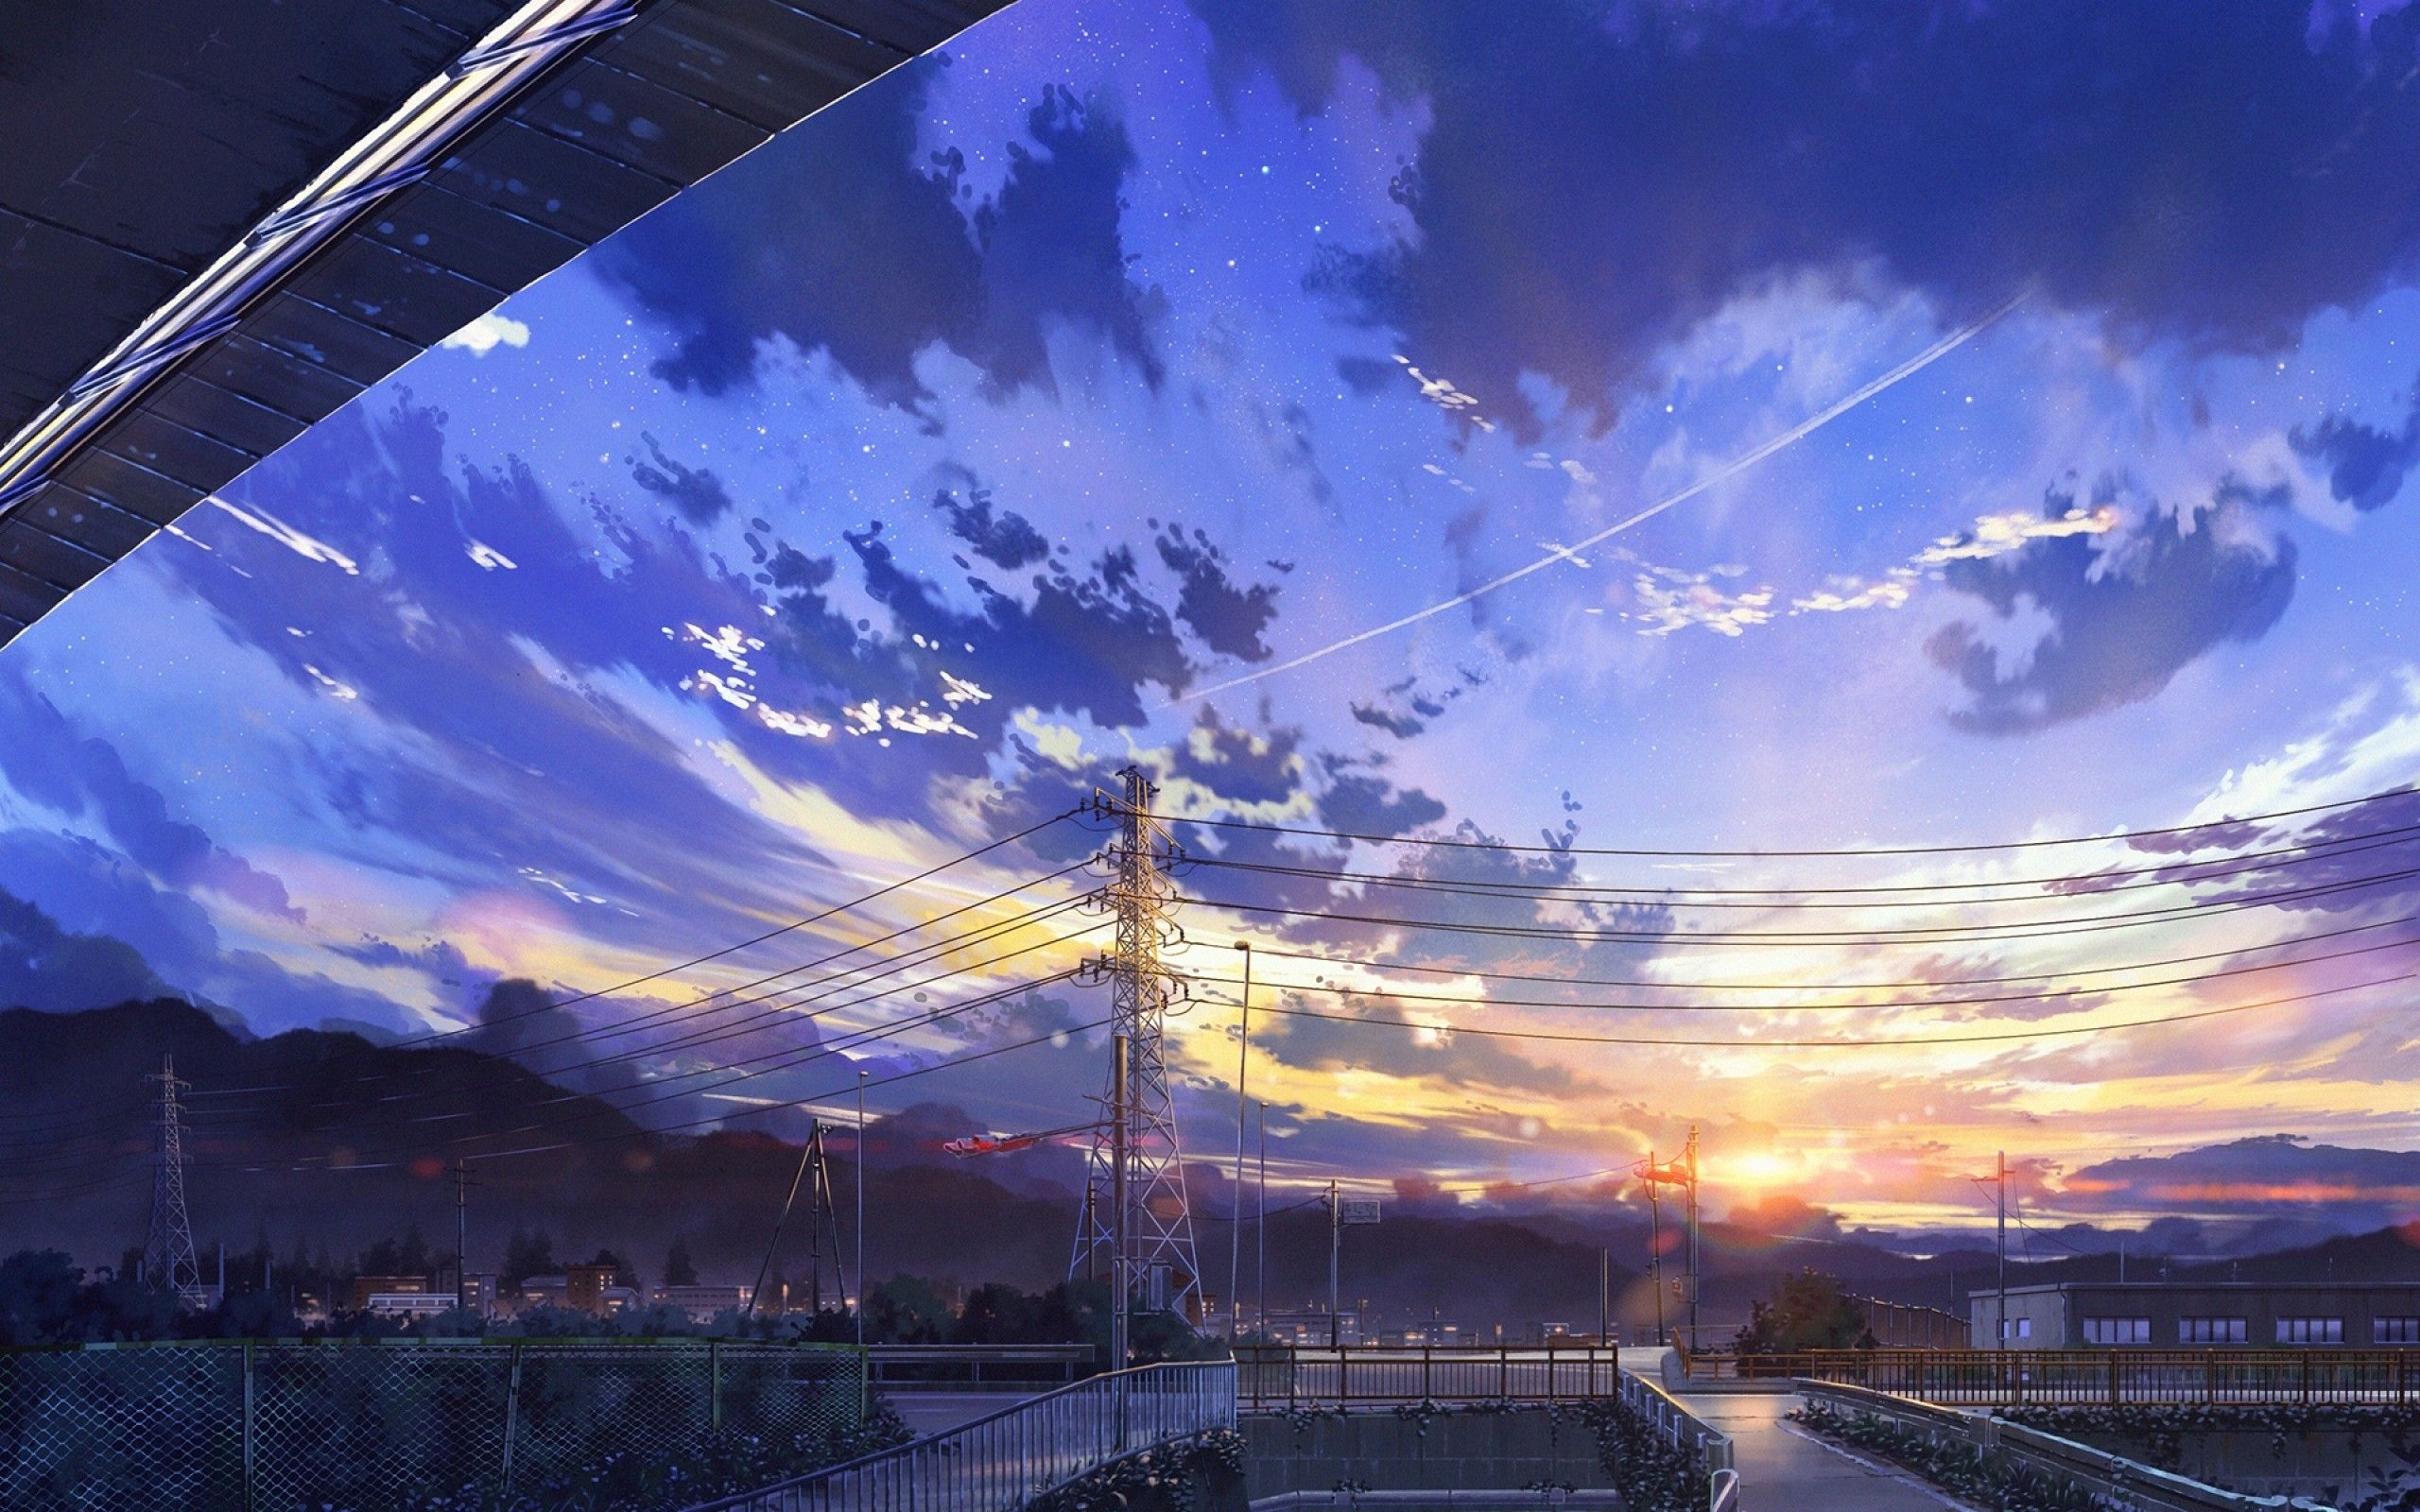 Download wallpaper 2880x1800 satoru gojo jujutsu kaise anime mac pro  retaia 2880x1800 hd background 26619